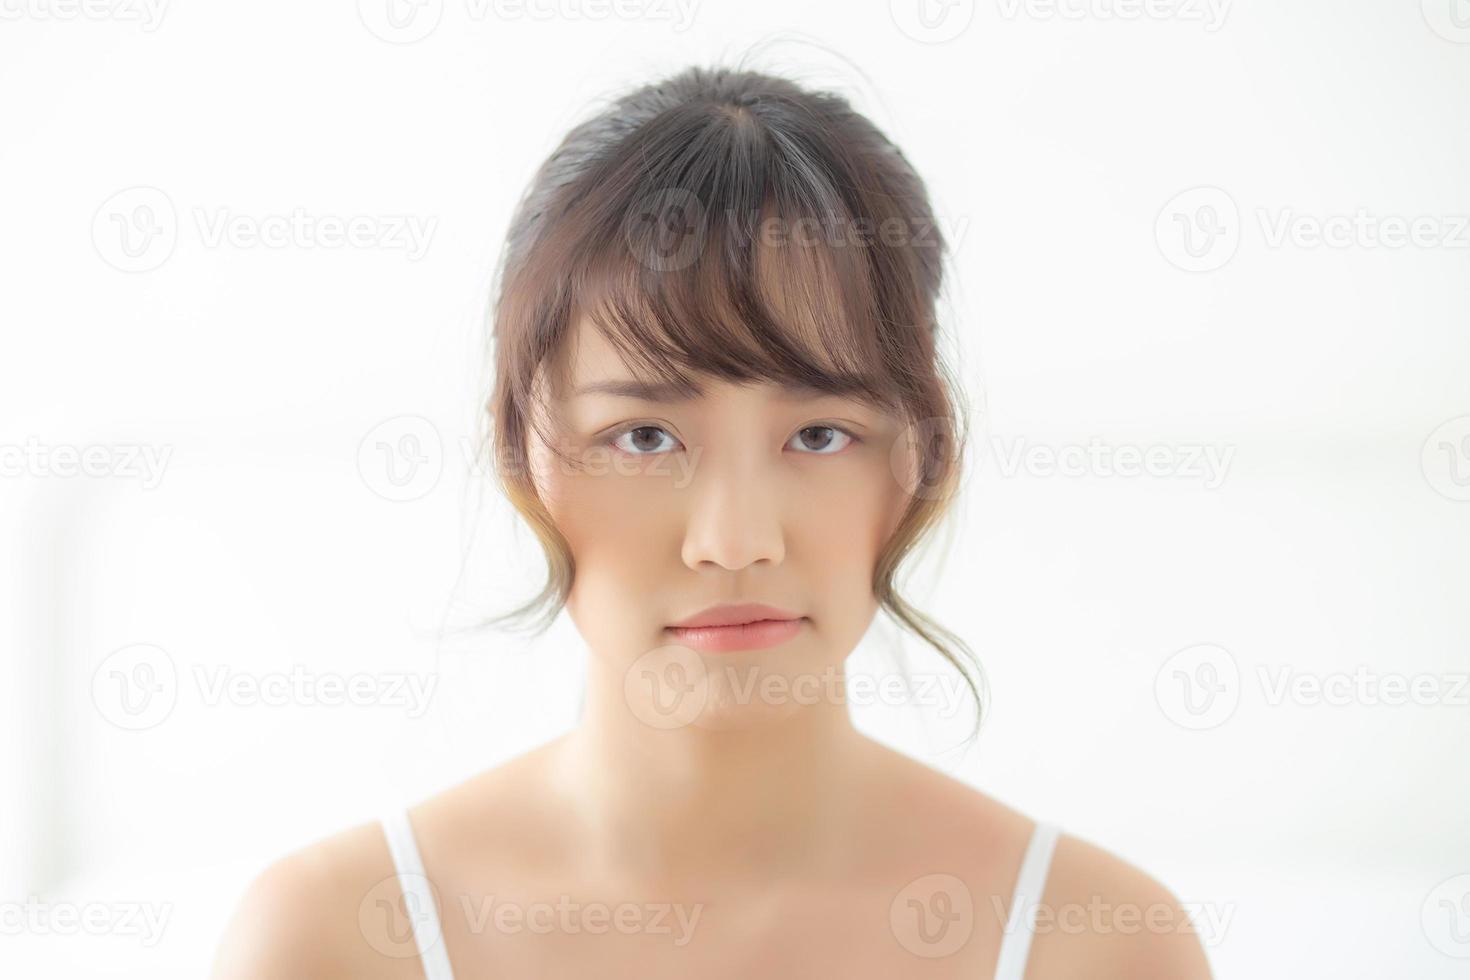 vackert porträtt ung asiatisk kvinna som har oroa sig olycklig och upprörd över problemhud, skönhet asiatisk flicka fäller uttryck och känslor ledsen och dålig, kvinnan har problem och missnöjd. foto